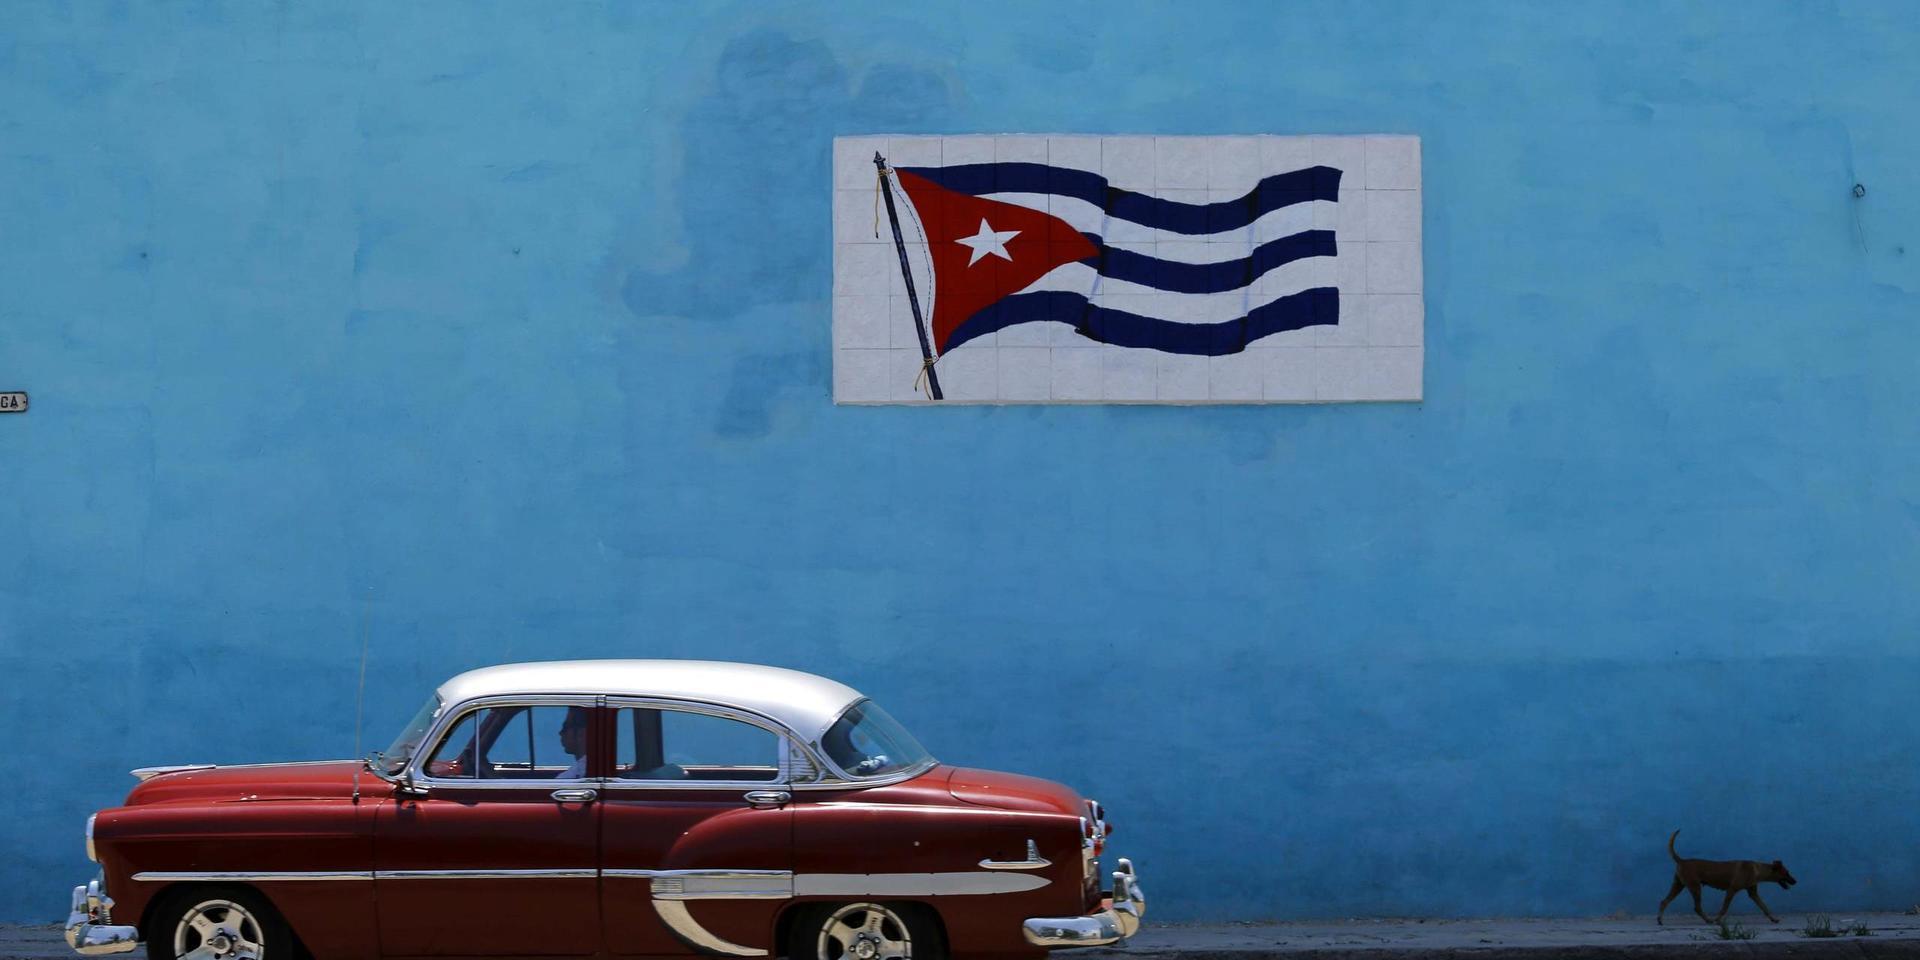 Diktatur. Trots förhoppningar har diktaturen på Kuba inte blivit mer demokratisk på senare år.